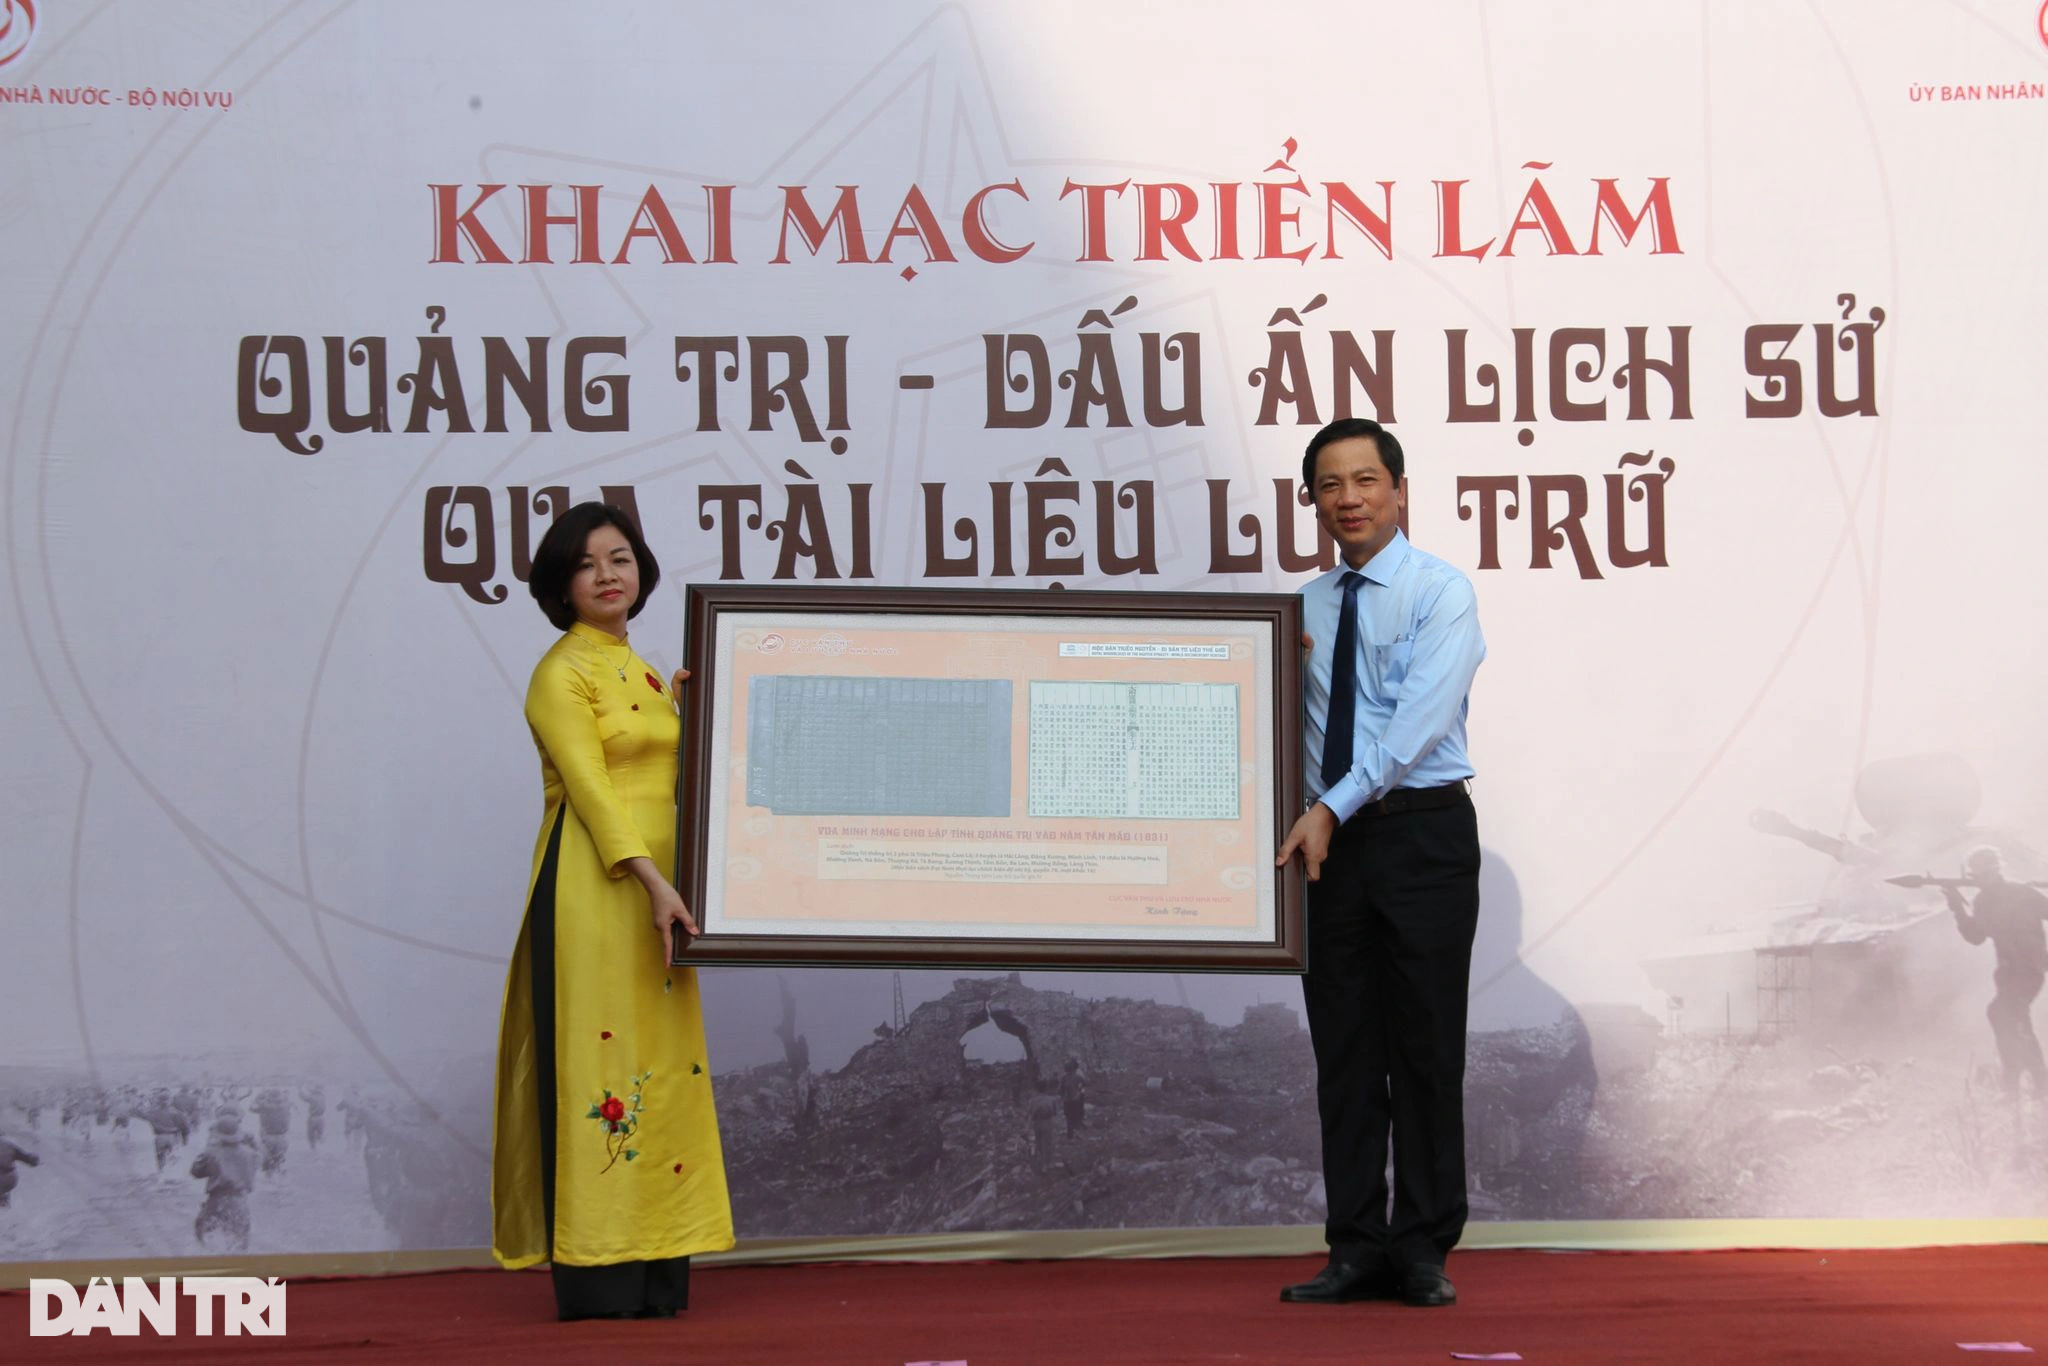 Dấu ấn lịch sử Quảng Trị từ thời chúa Nguyễn lập dinh trấn đến hiện đại - 2